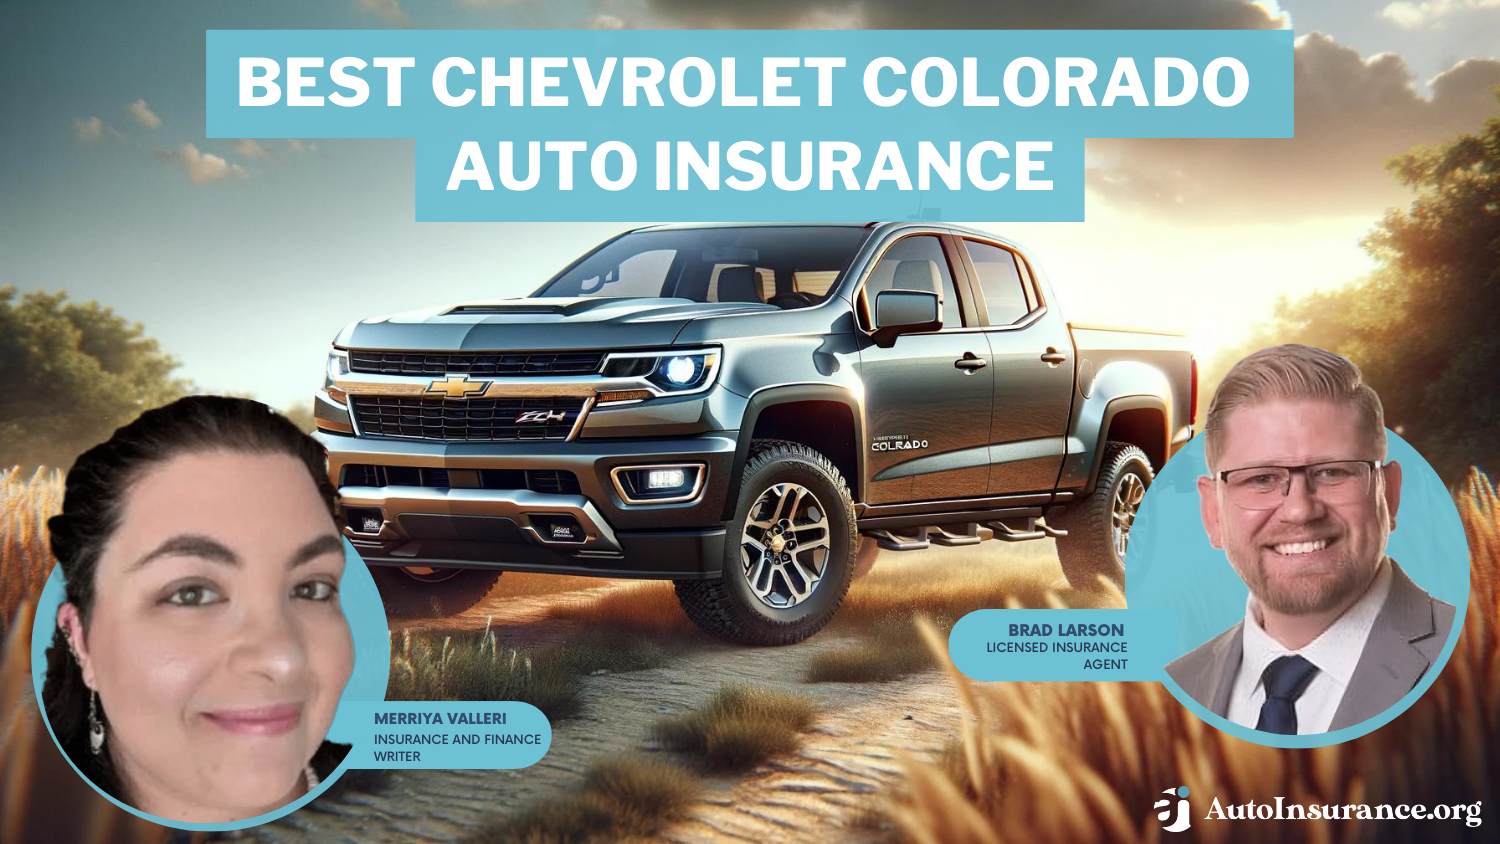 Best Chevrolet Colorado Auto Insurance: Progressive, State Farm, and Farmers